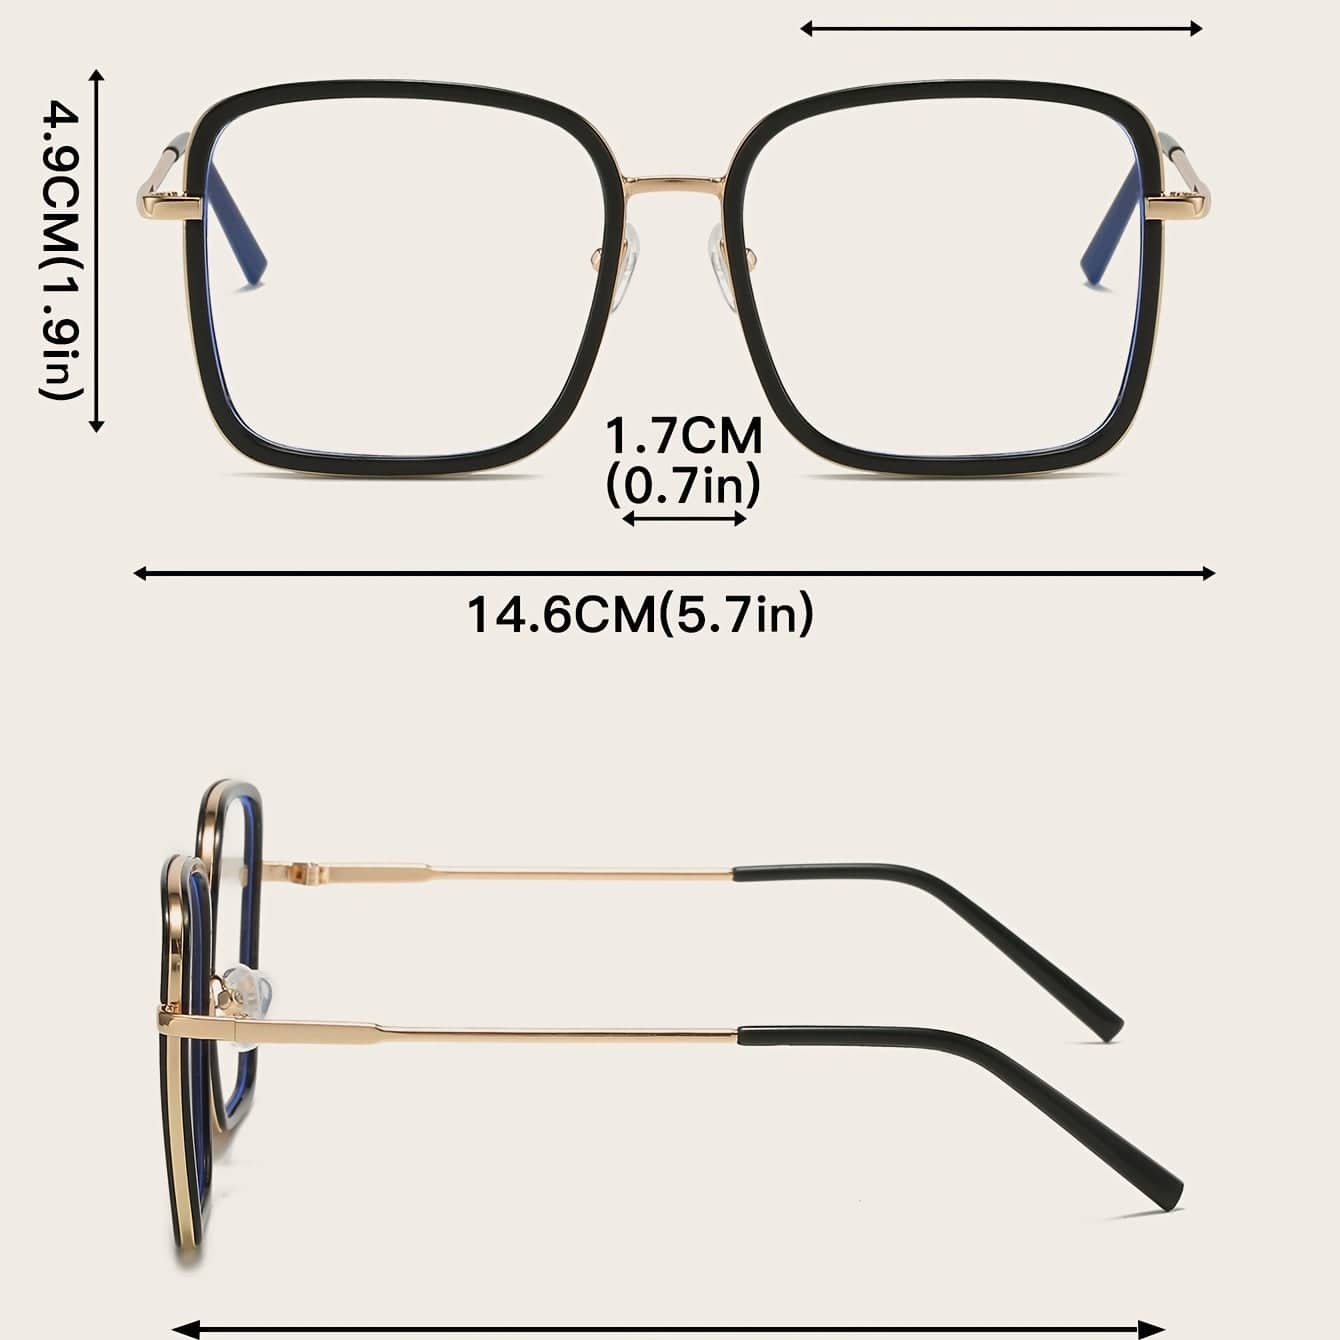 Vintage Blaulicht-Blockierbrille - Unisex, klare Linse, Studentenrahmen